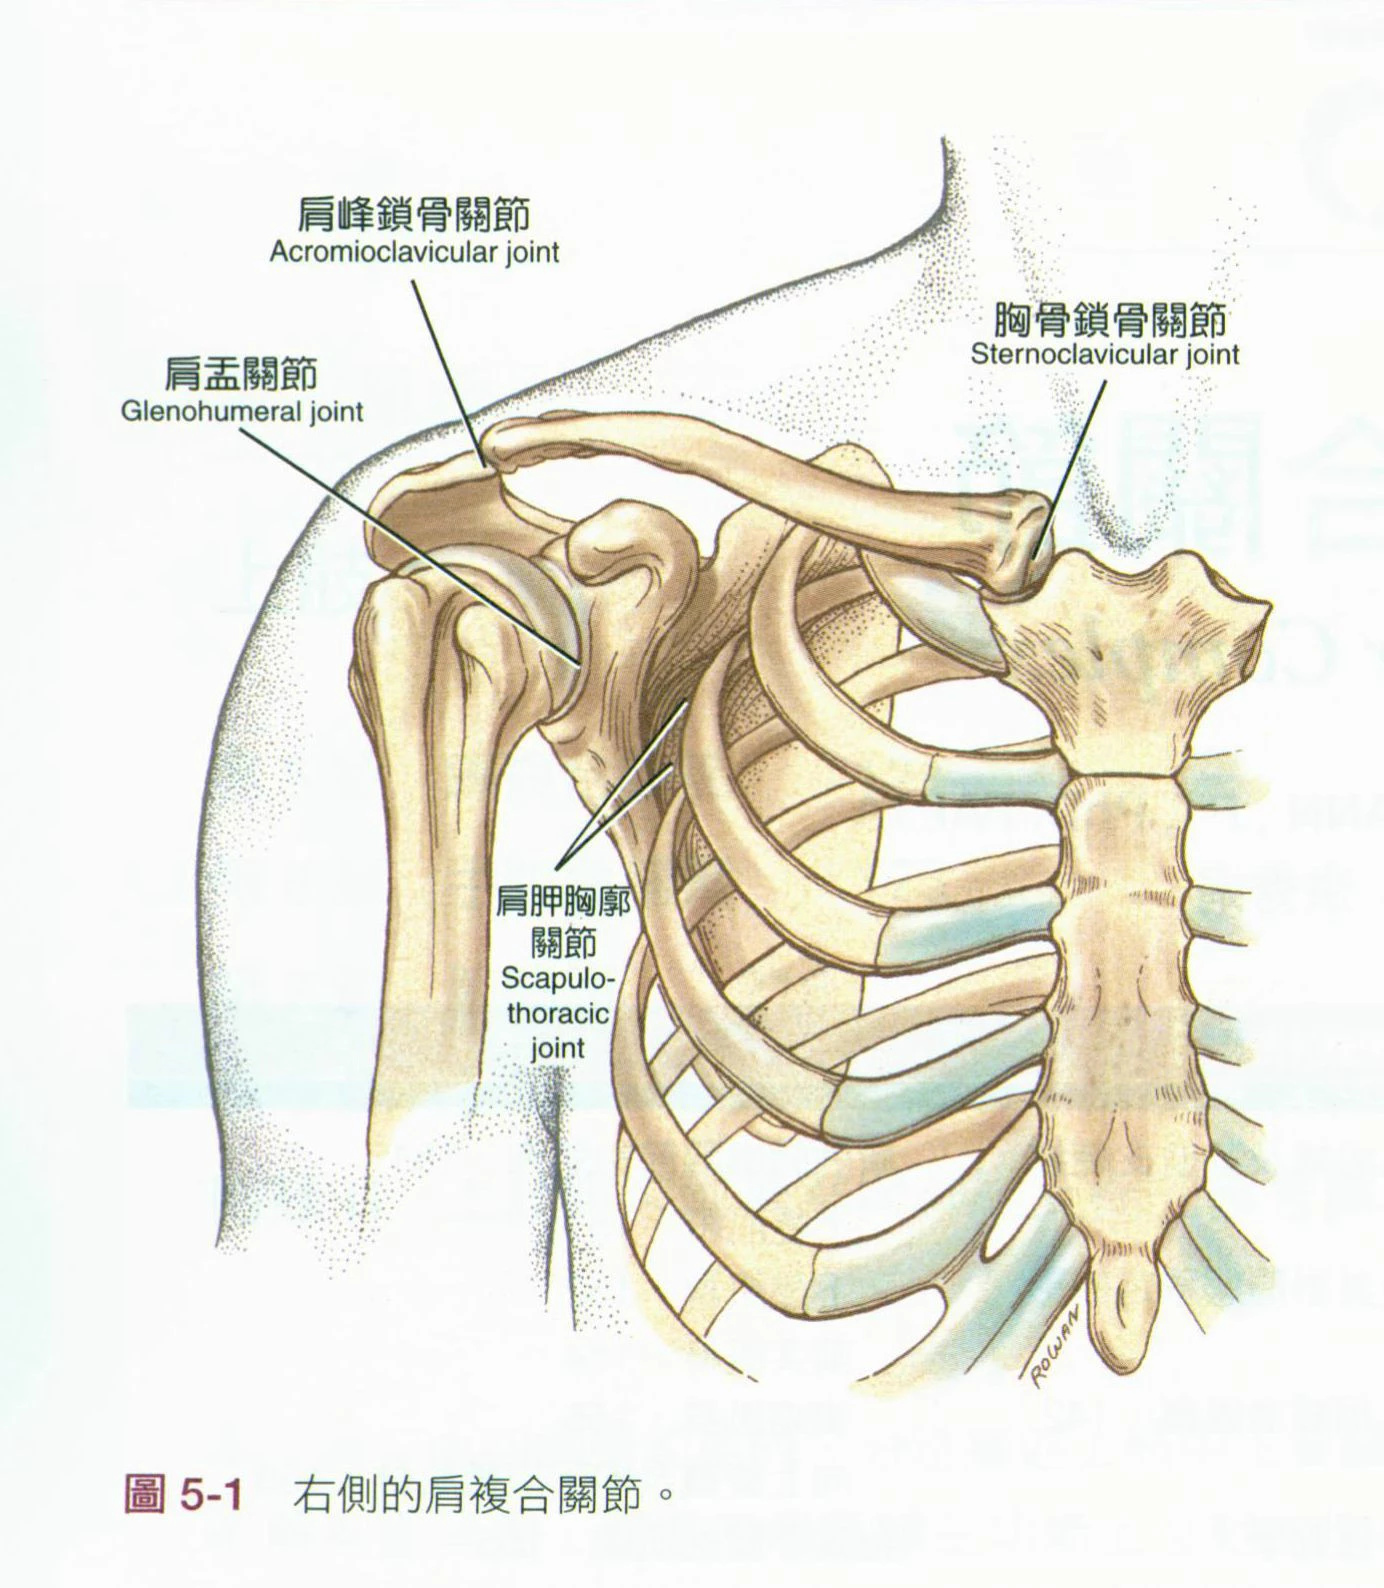 胸锁关节,肩峰肱骨关节以及肩胛与胸壁间关节(如图示)肩部的骨骼包括